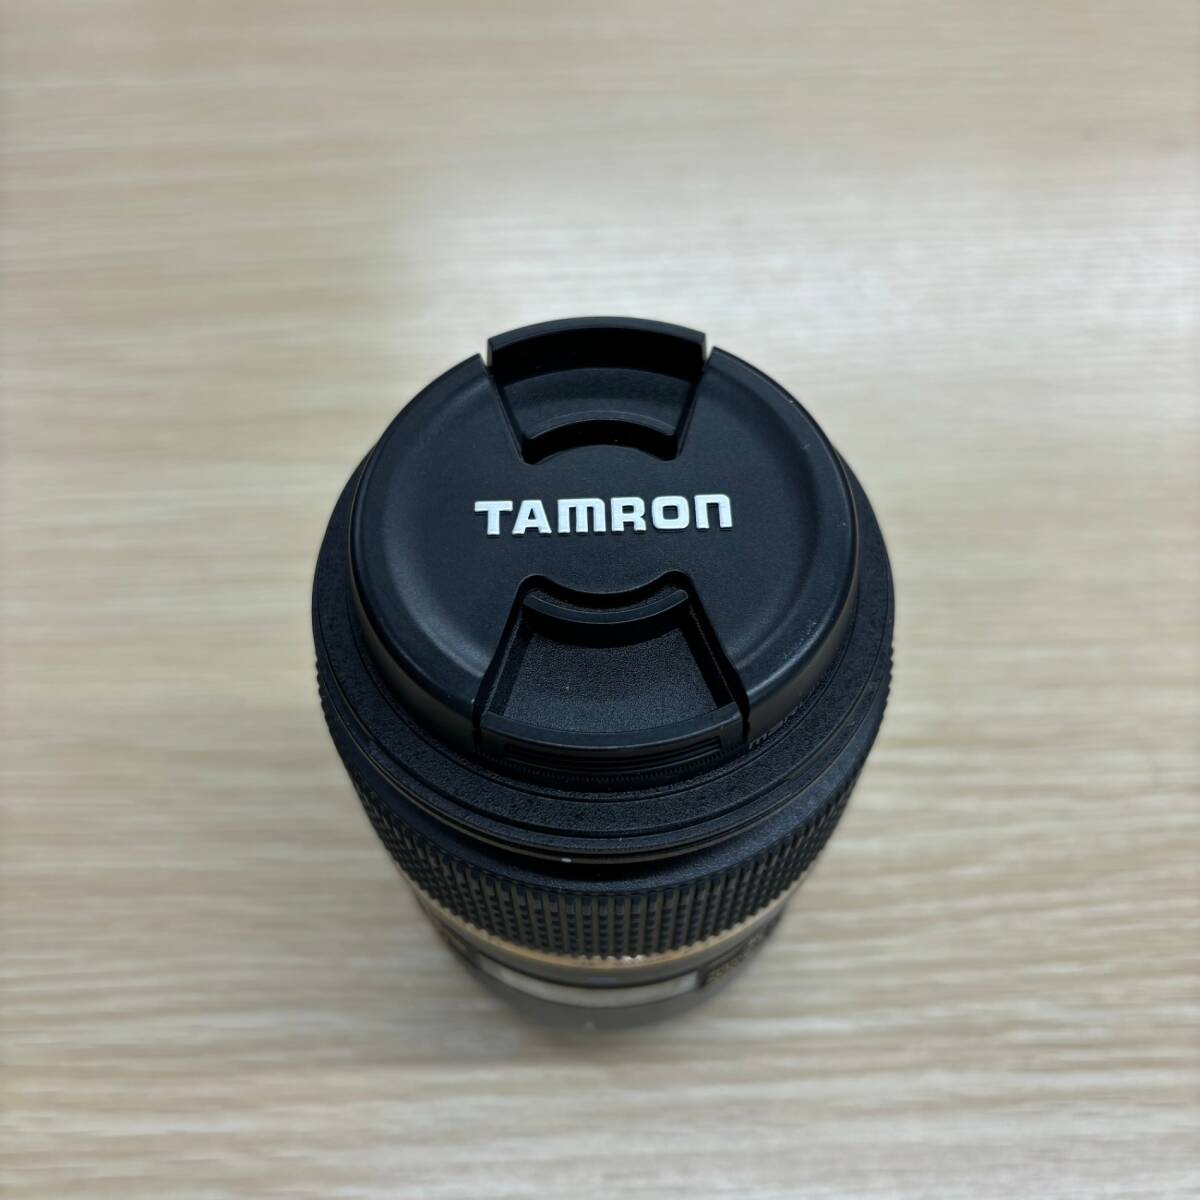 TAMRON タムロン SP AF マクロ 90mm F/2.8 Di レンズカバー付き_画像3